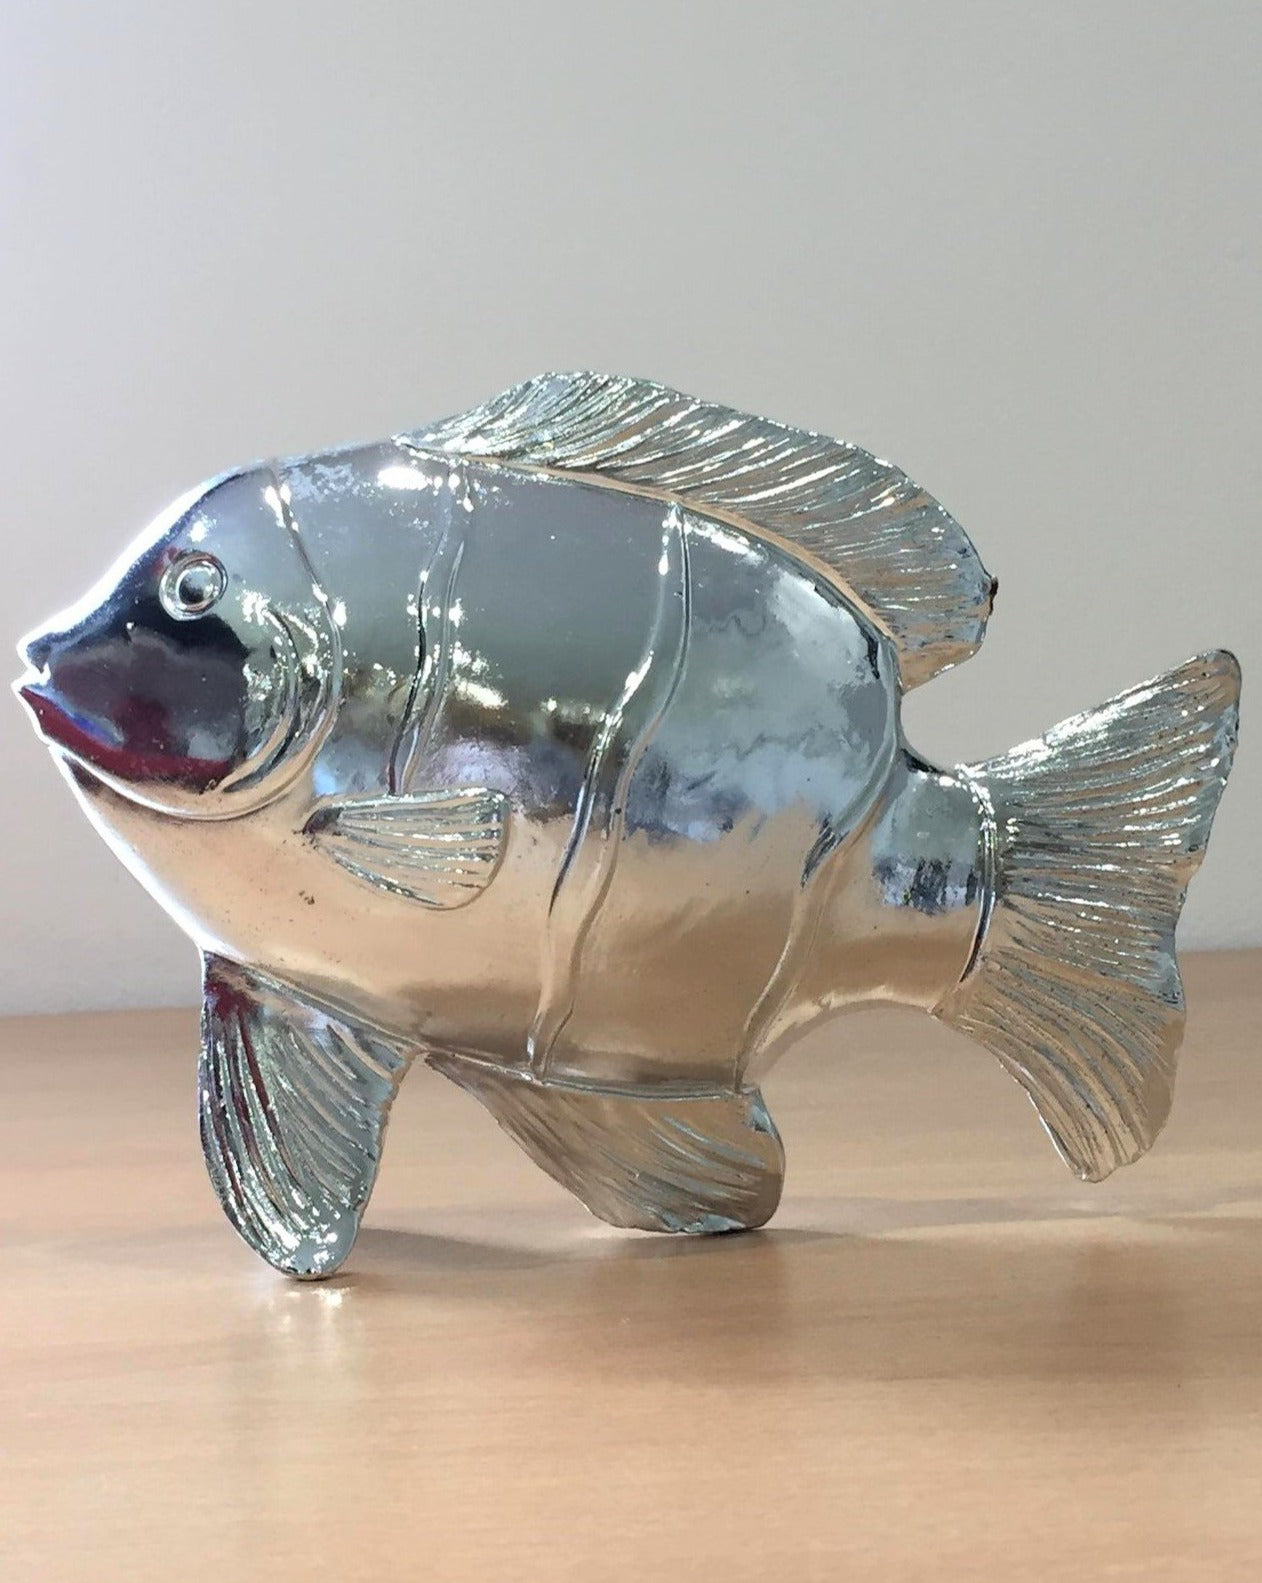 Silver Fish